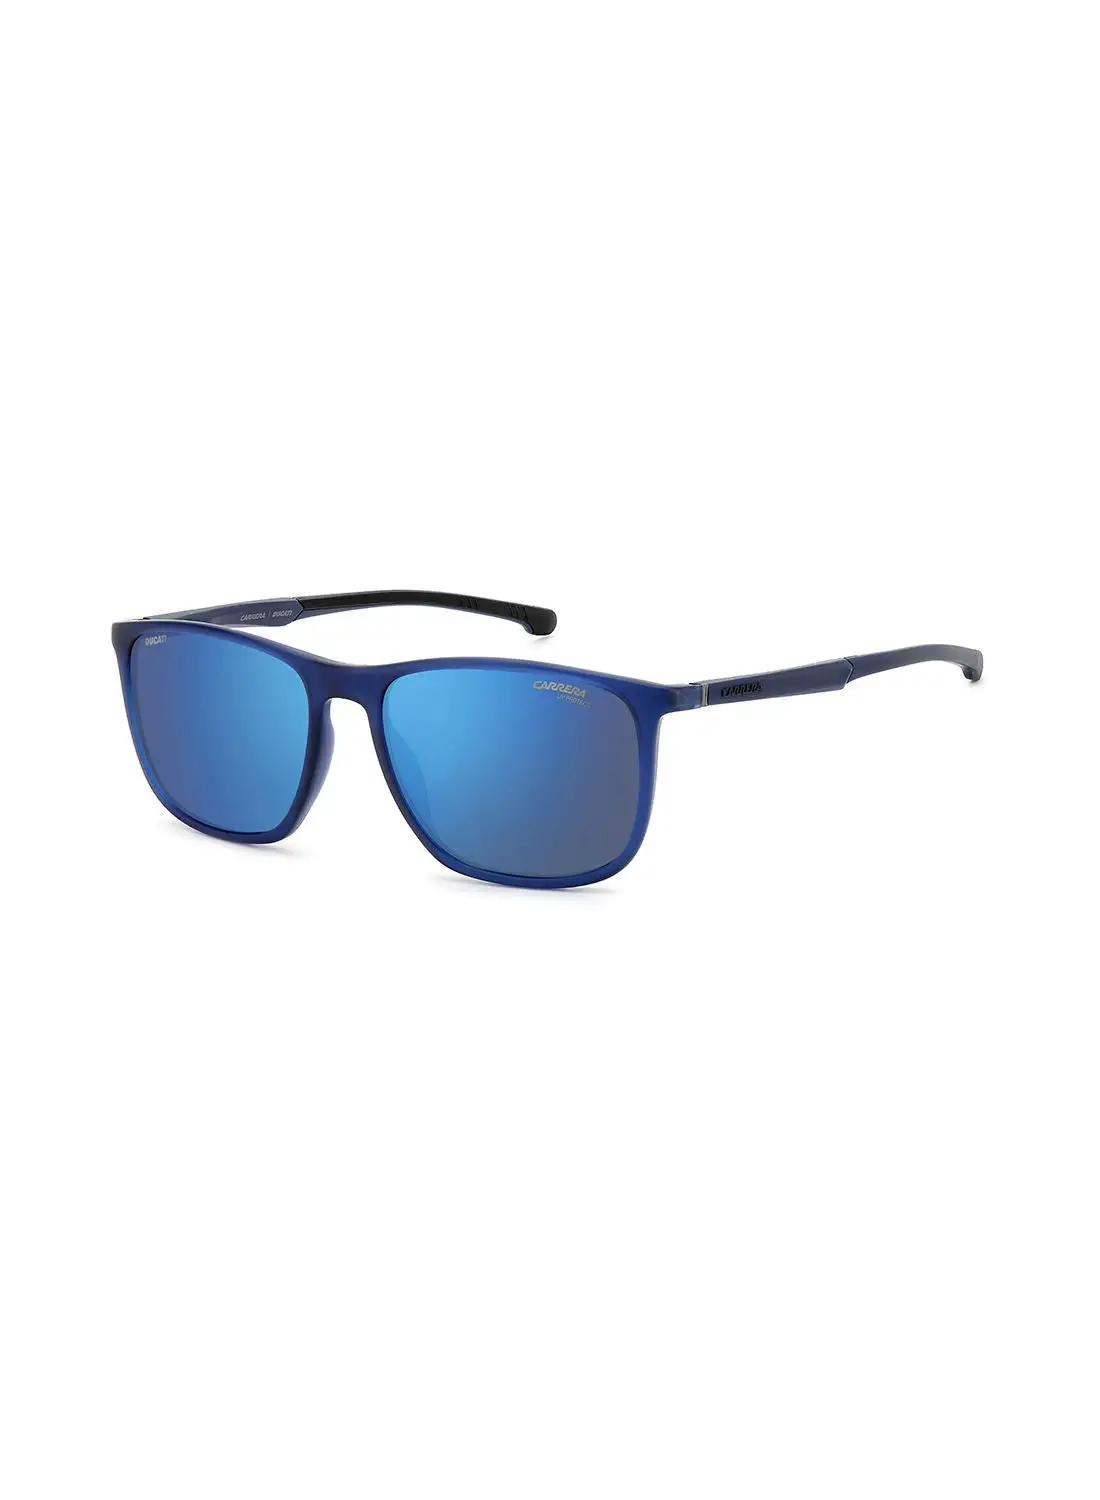 نظارة كاريرا الشمسية مستطيلة الشكل للحماية من الأشعة فوق البنفسجية للرجال - Carduc 004/S Blue 57 - مقاس العدسة: 57 ملم